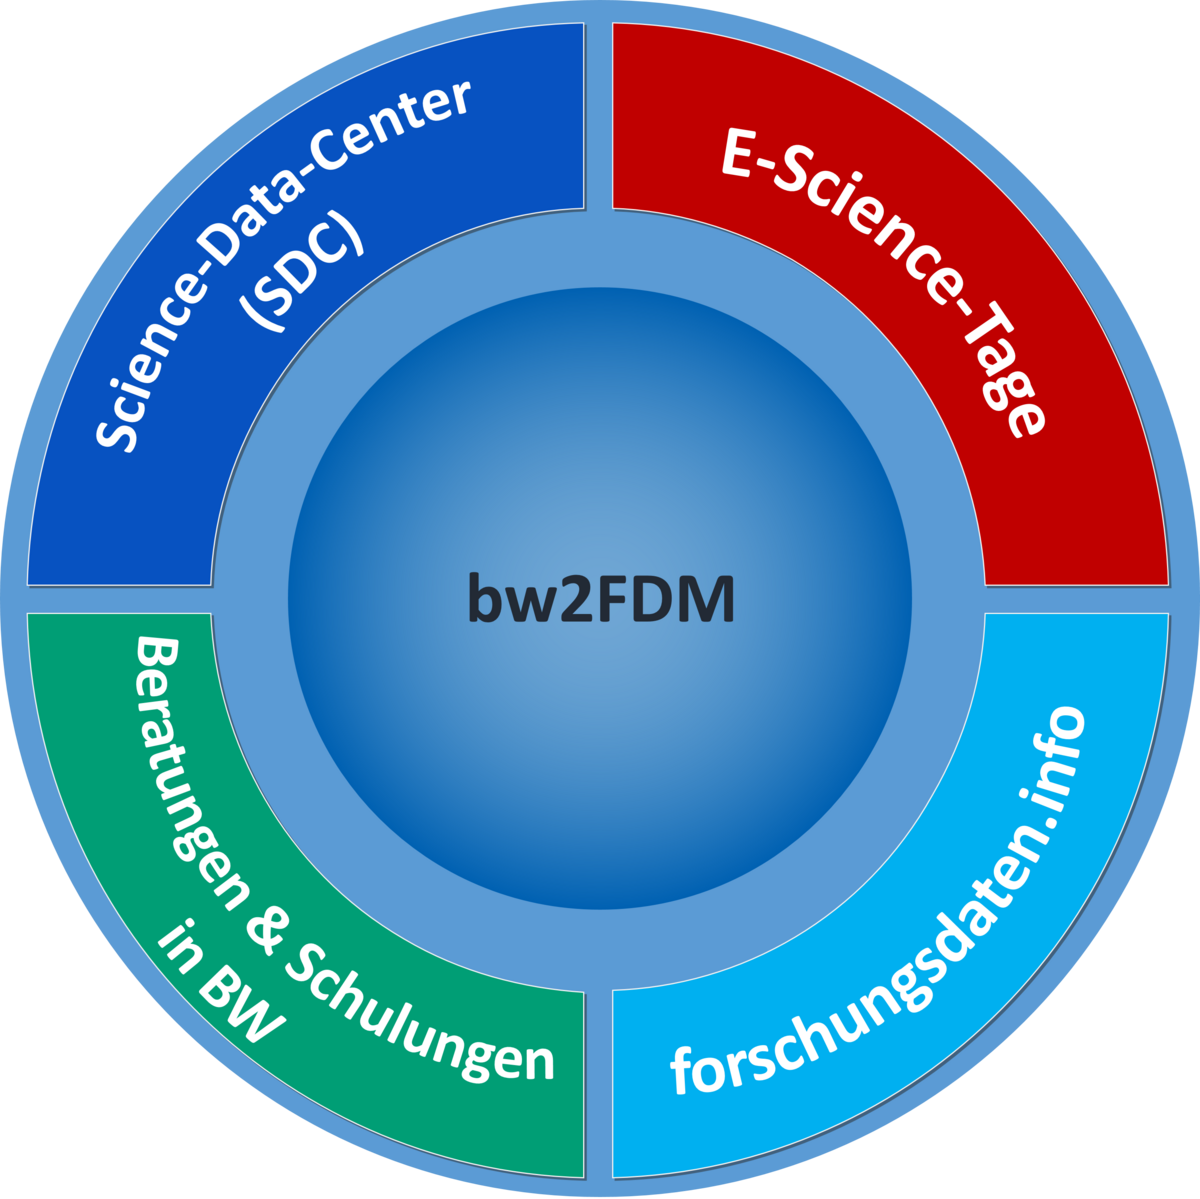 Bestandteile von bw2FDM waren die Koordination der SDC, die Konferenz E-Science-Tage, die Plattform forschungsdaten.info sowie Beratungen & Schulungen